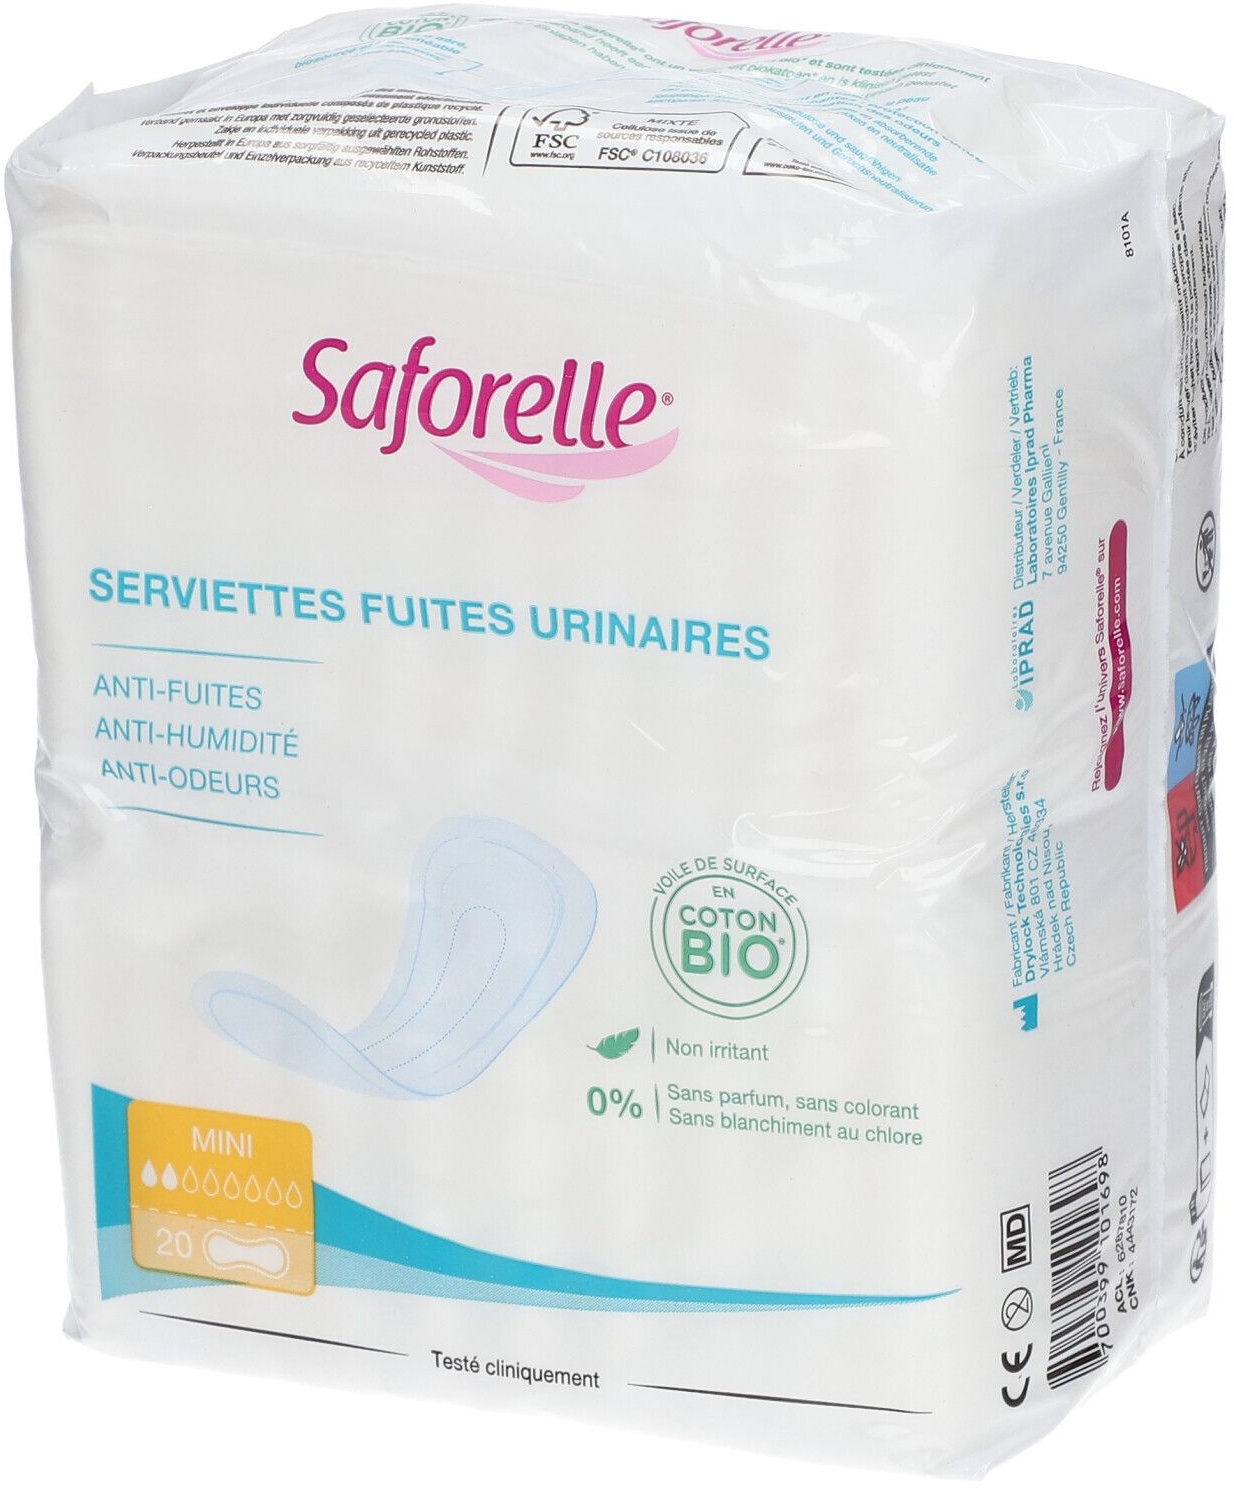 Saforelle® Serviettes Fuites Urinaires BIO Mini 20 pc(s) serviettes hygiénique(s)